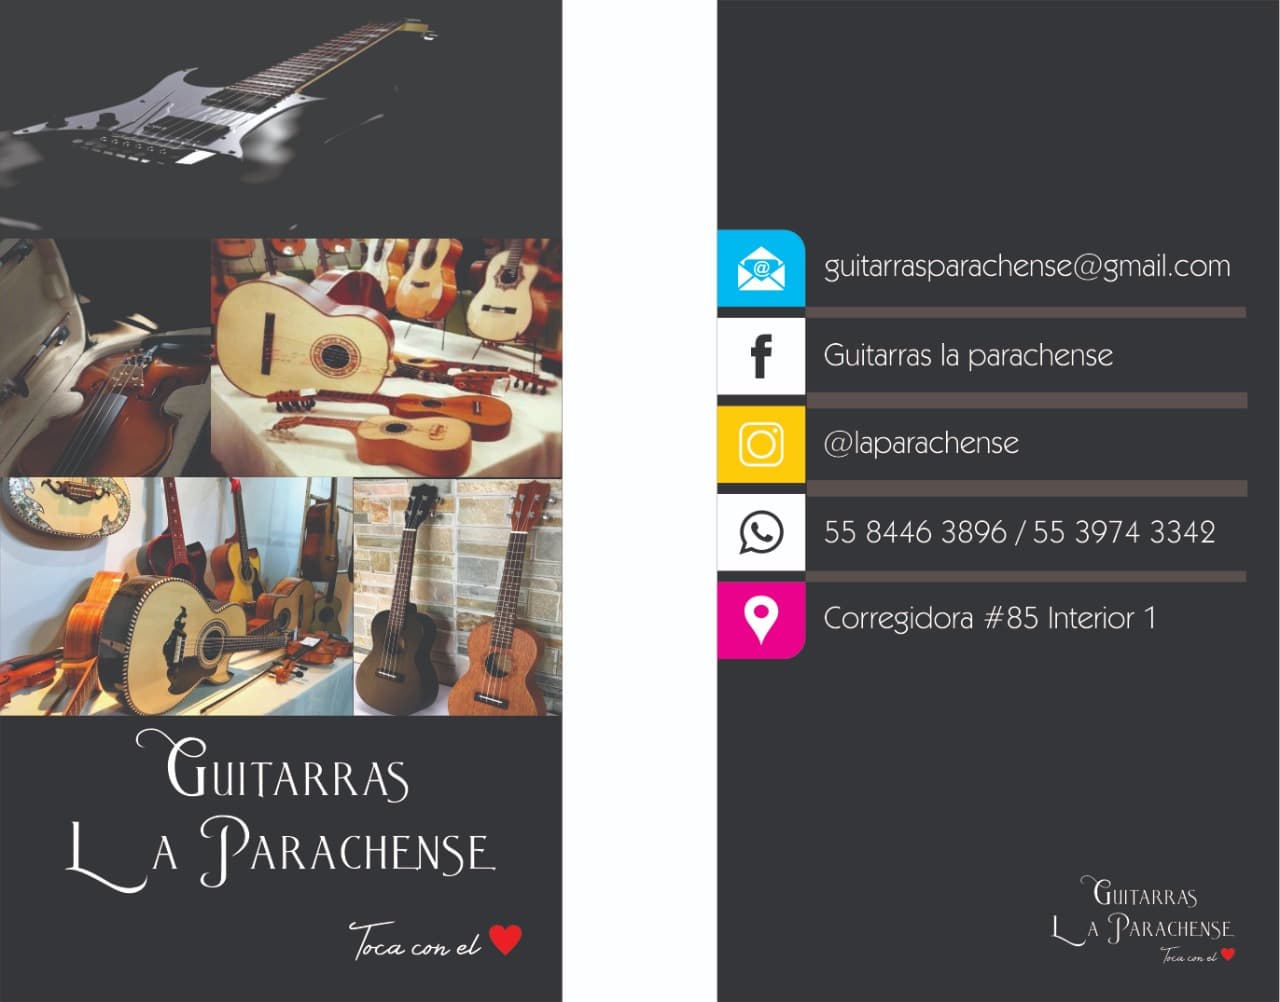 Guitarras La Parachense